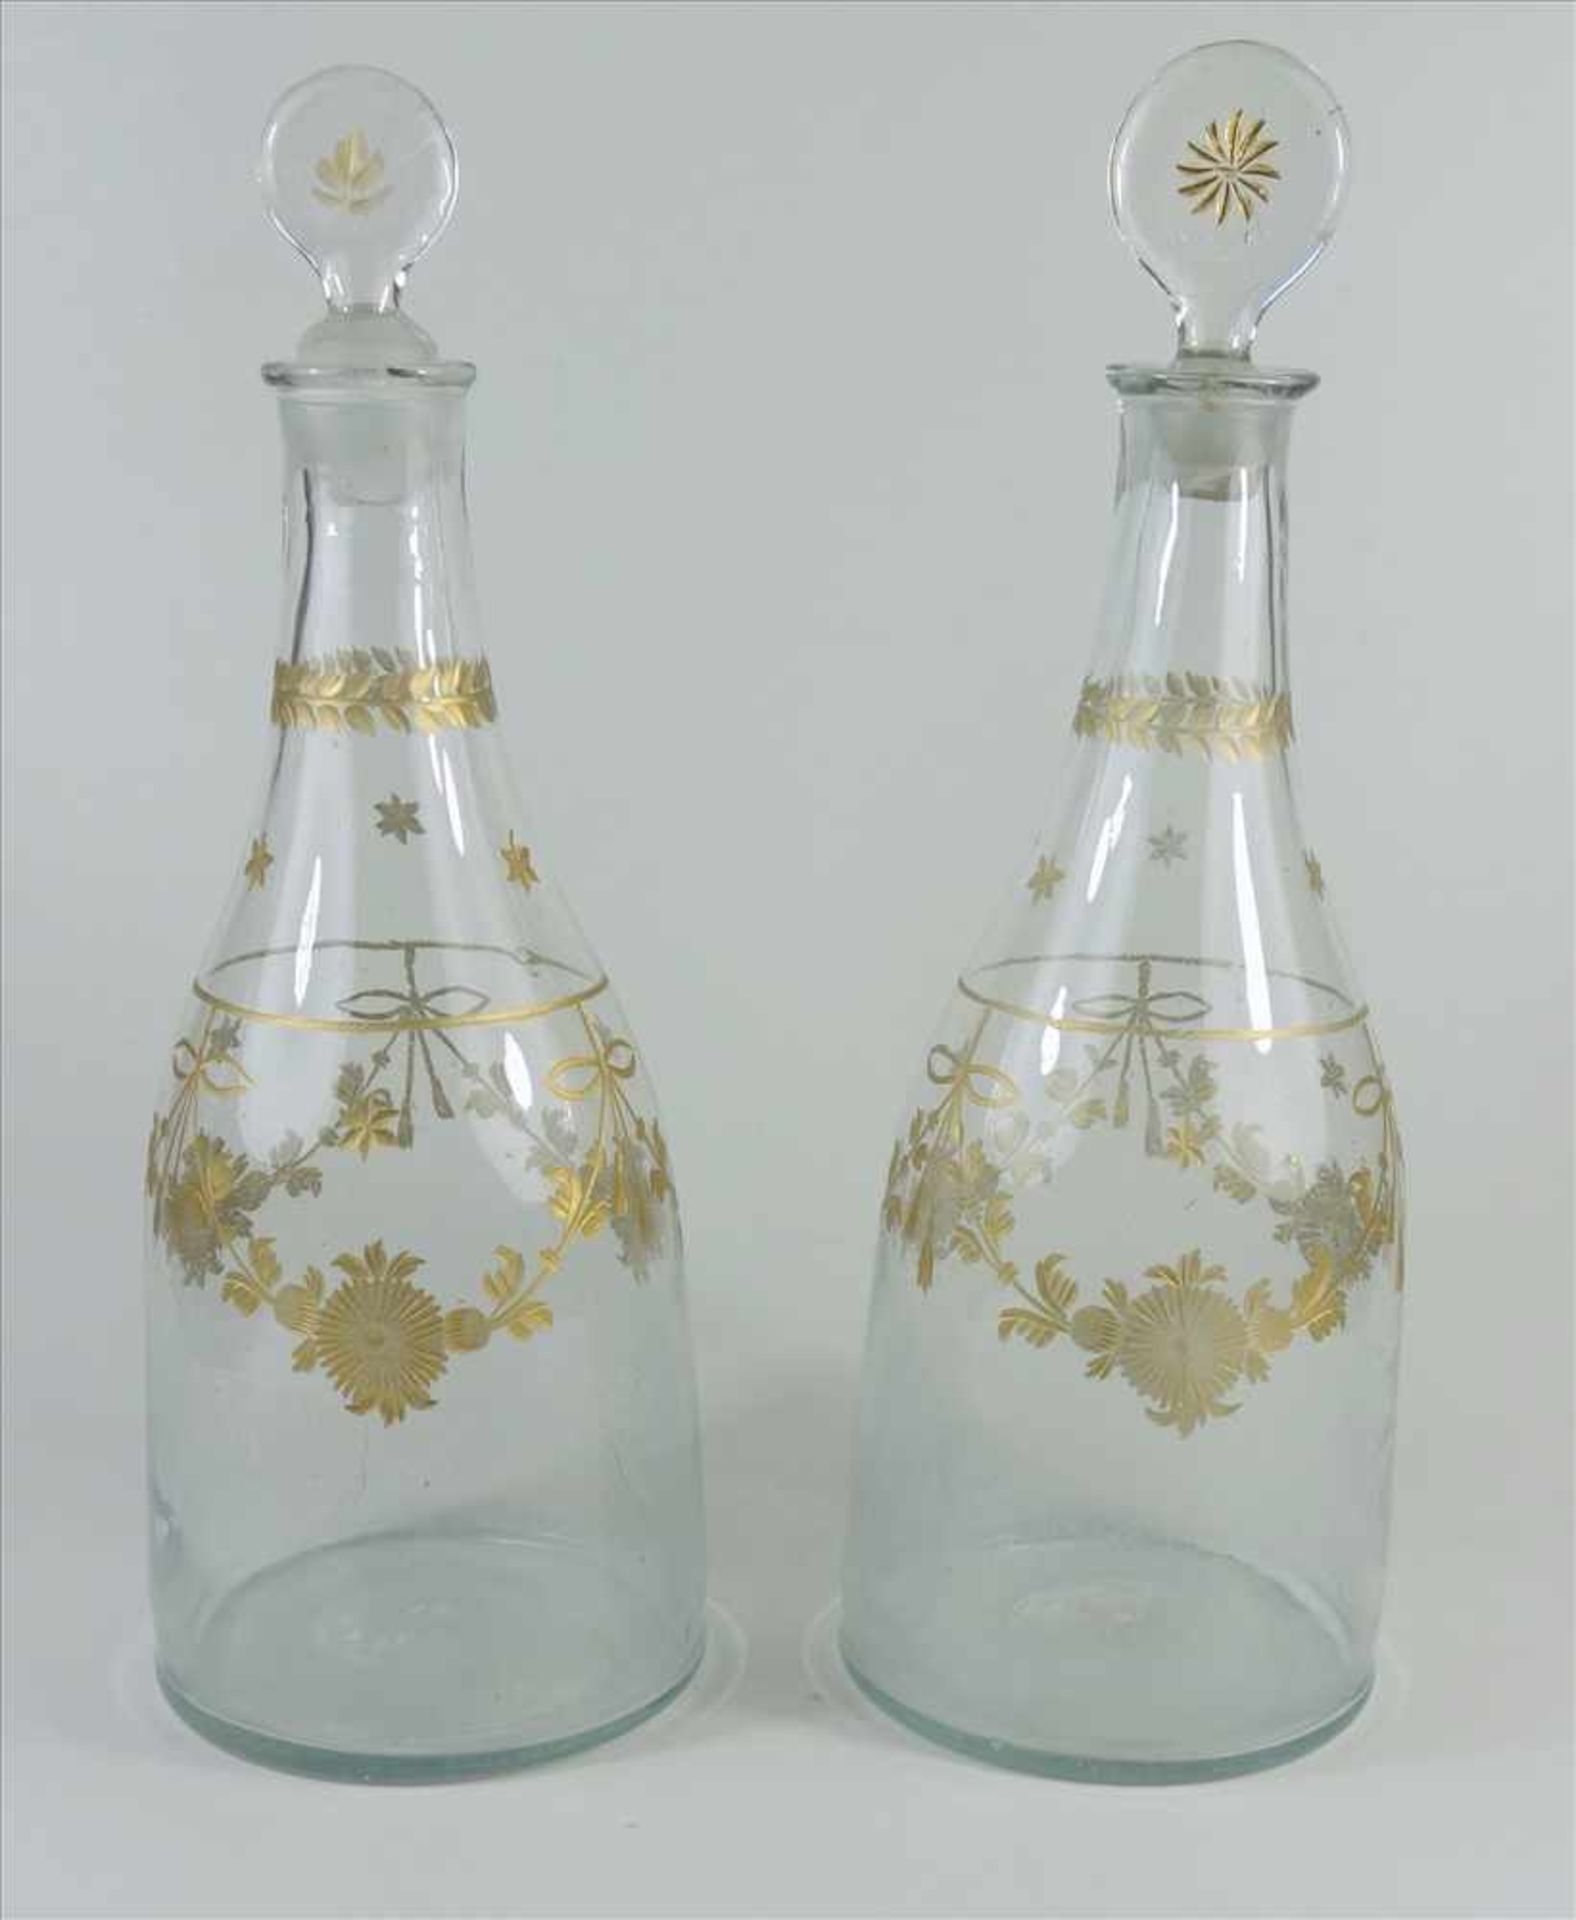 Paar Karaffen, Biedermeier, Böhmen, um 1850, Klarglas, umlaufend gravierte, vergoldete Blüten und